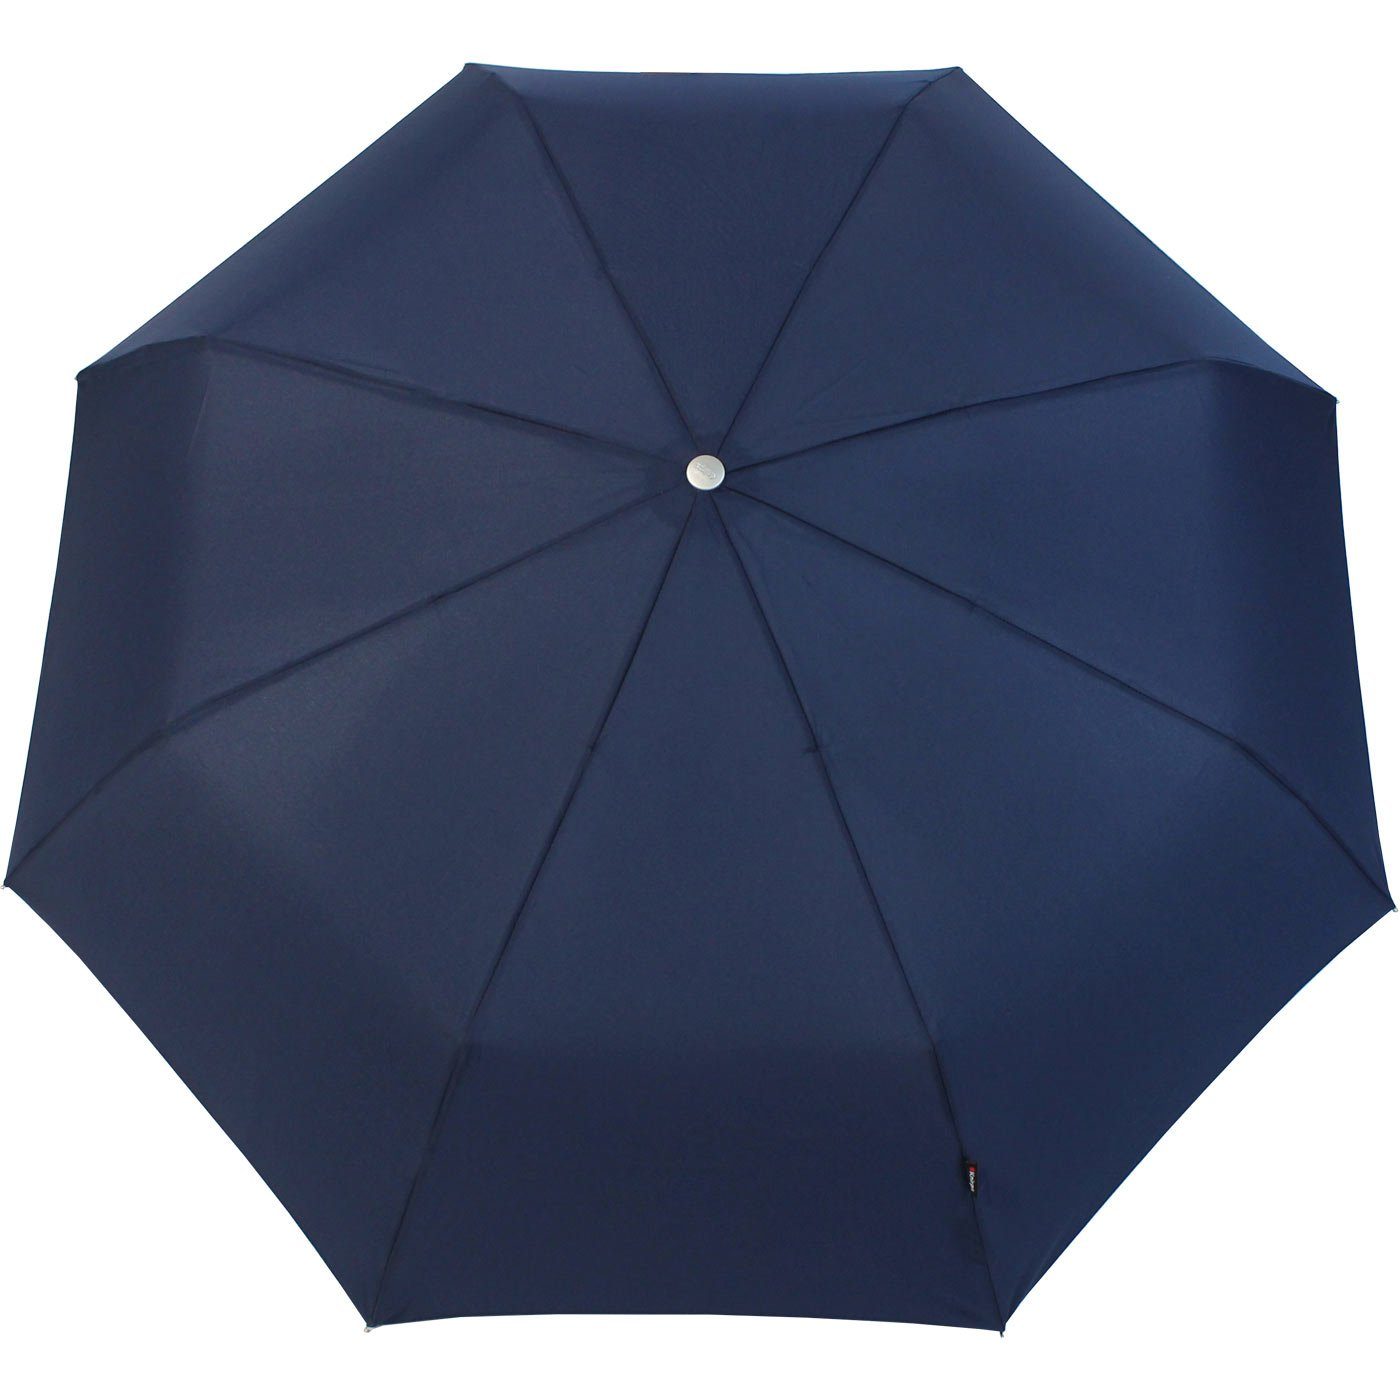 große, stabile Large der navy-blau Auf-Zu-Automatik, mit Knirps® Duomatic Begleiter Taschenregenschirm